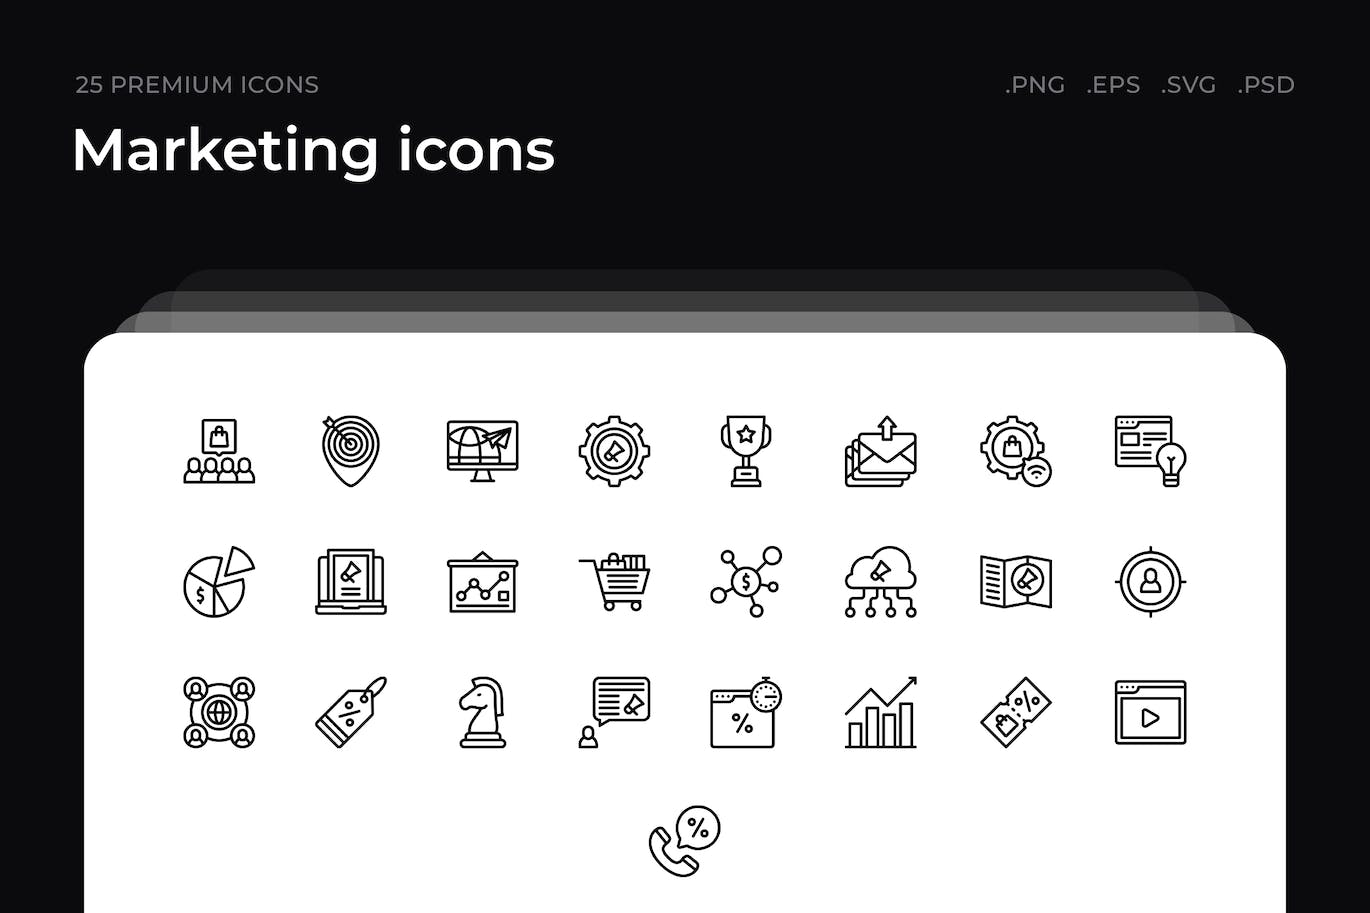 25枚营销主题简约线条矢量图标 Marketing icons 图标素材 第1张